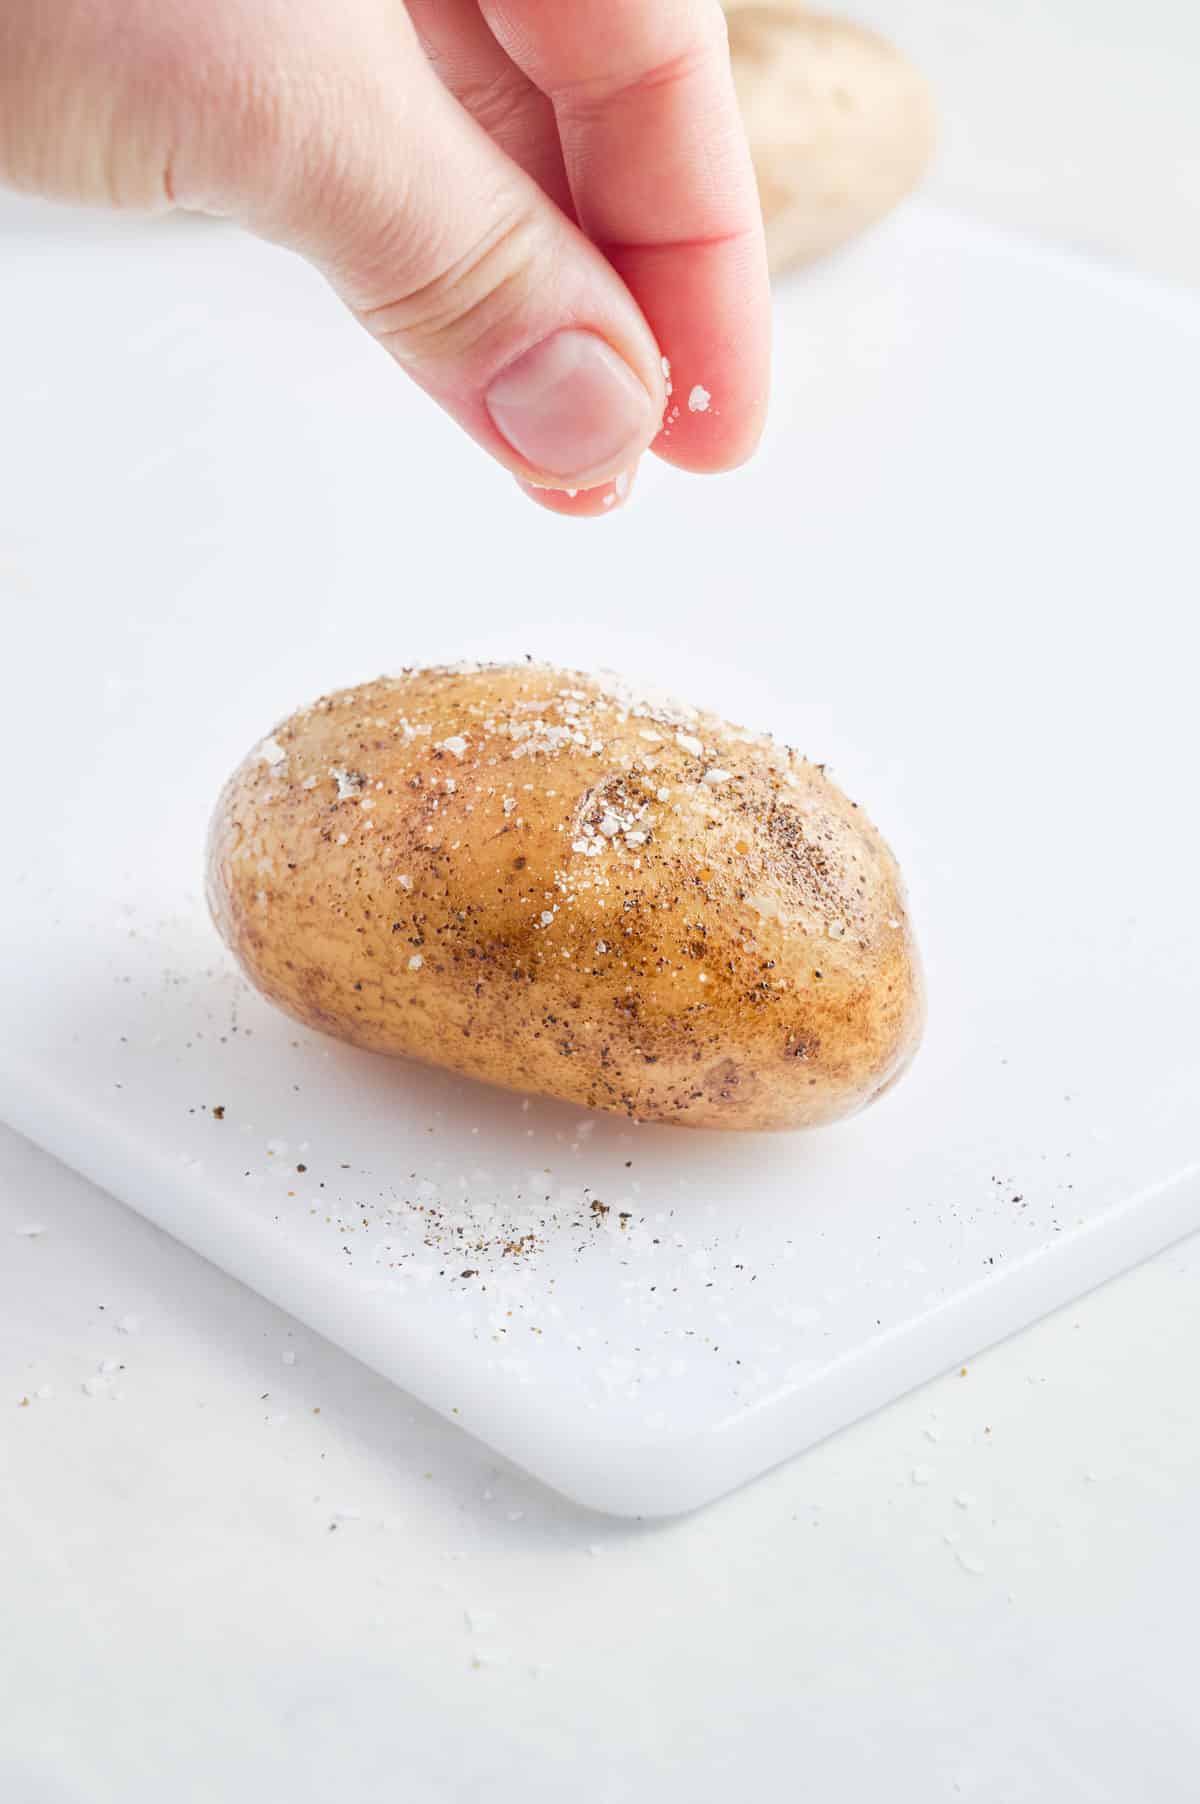 Salt is sprinkled on an oiled potato.